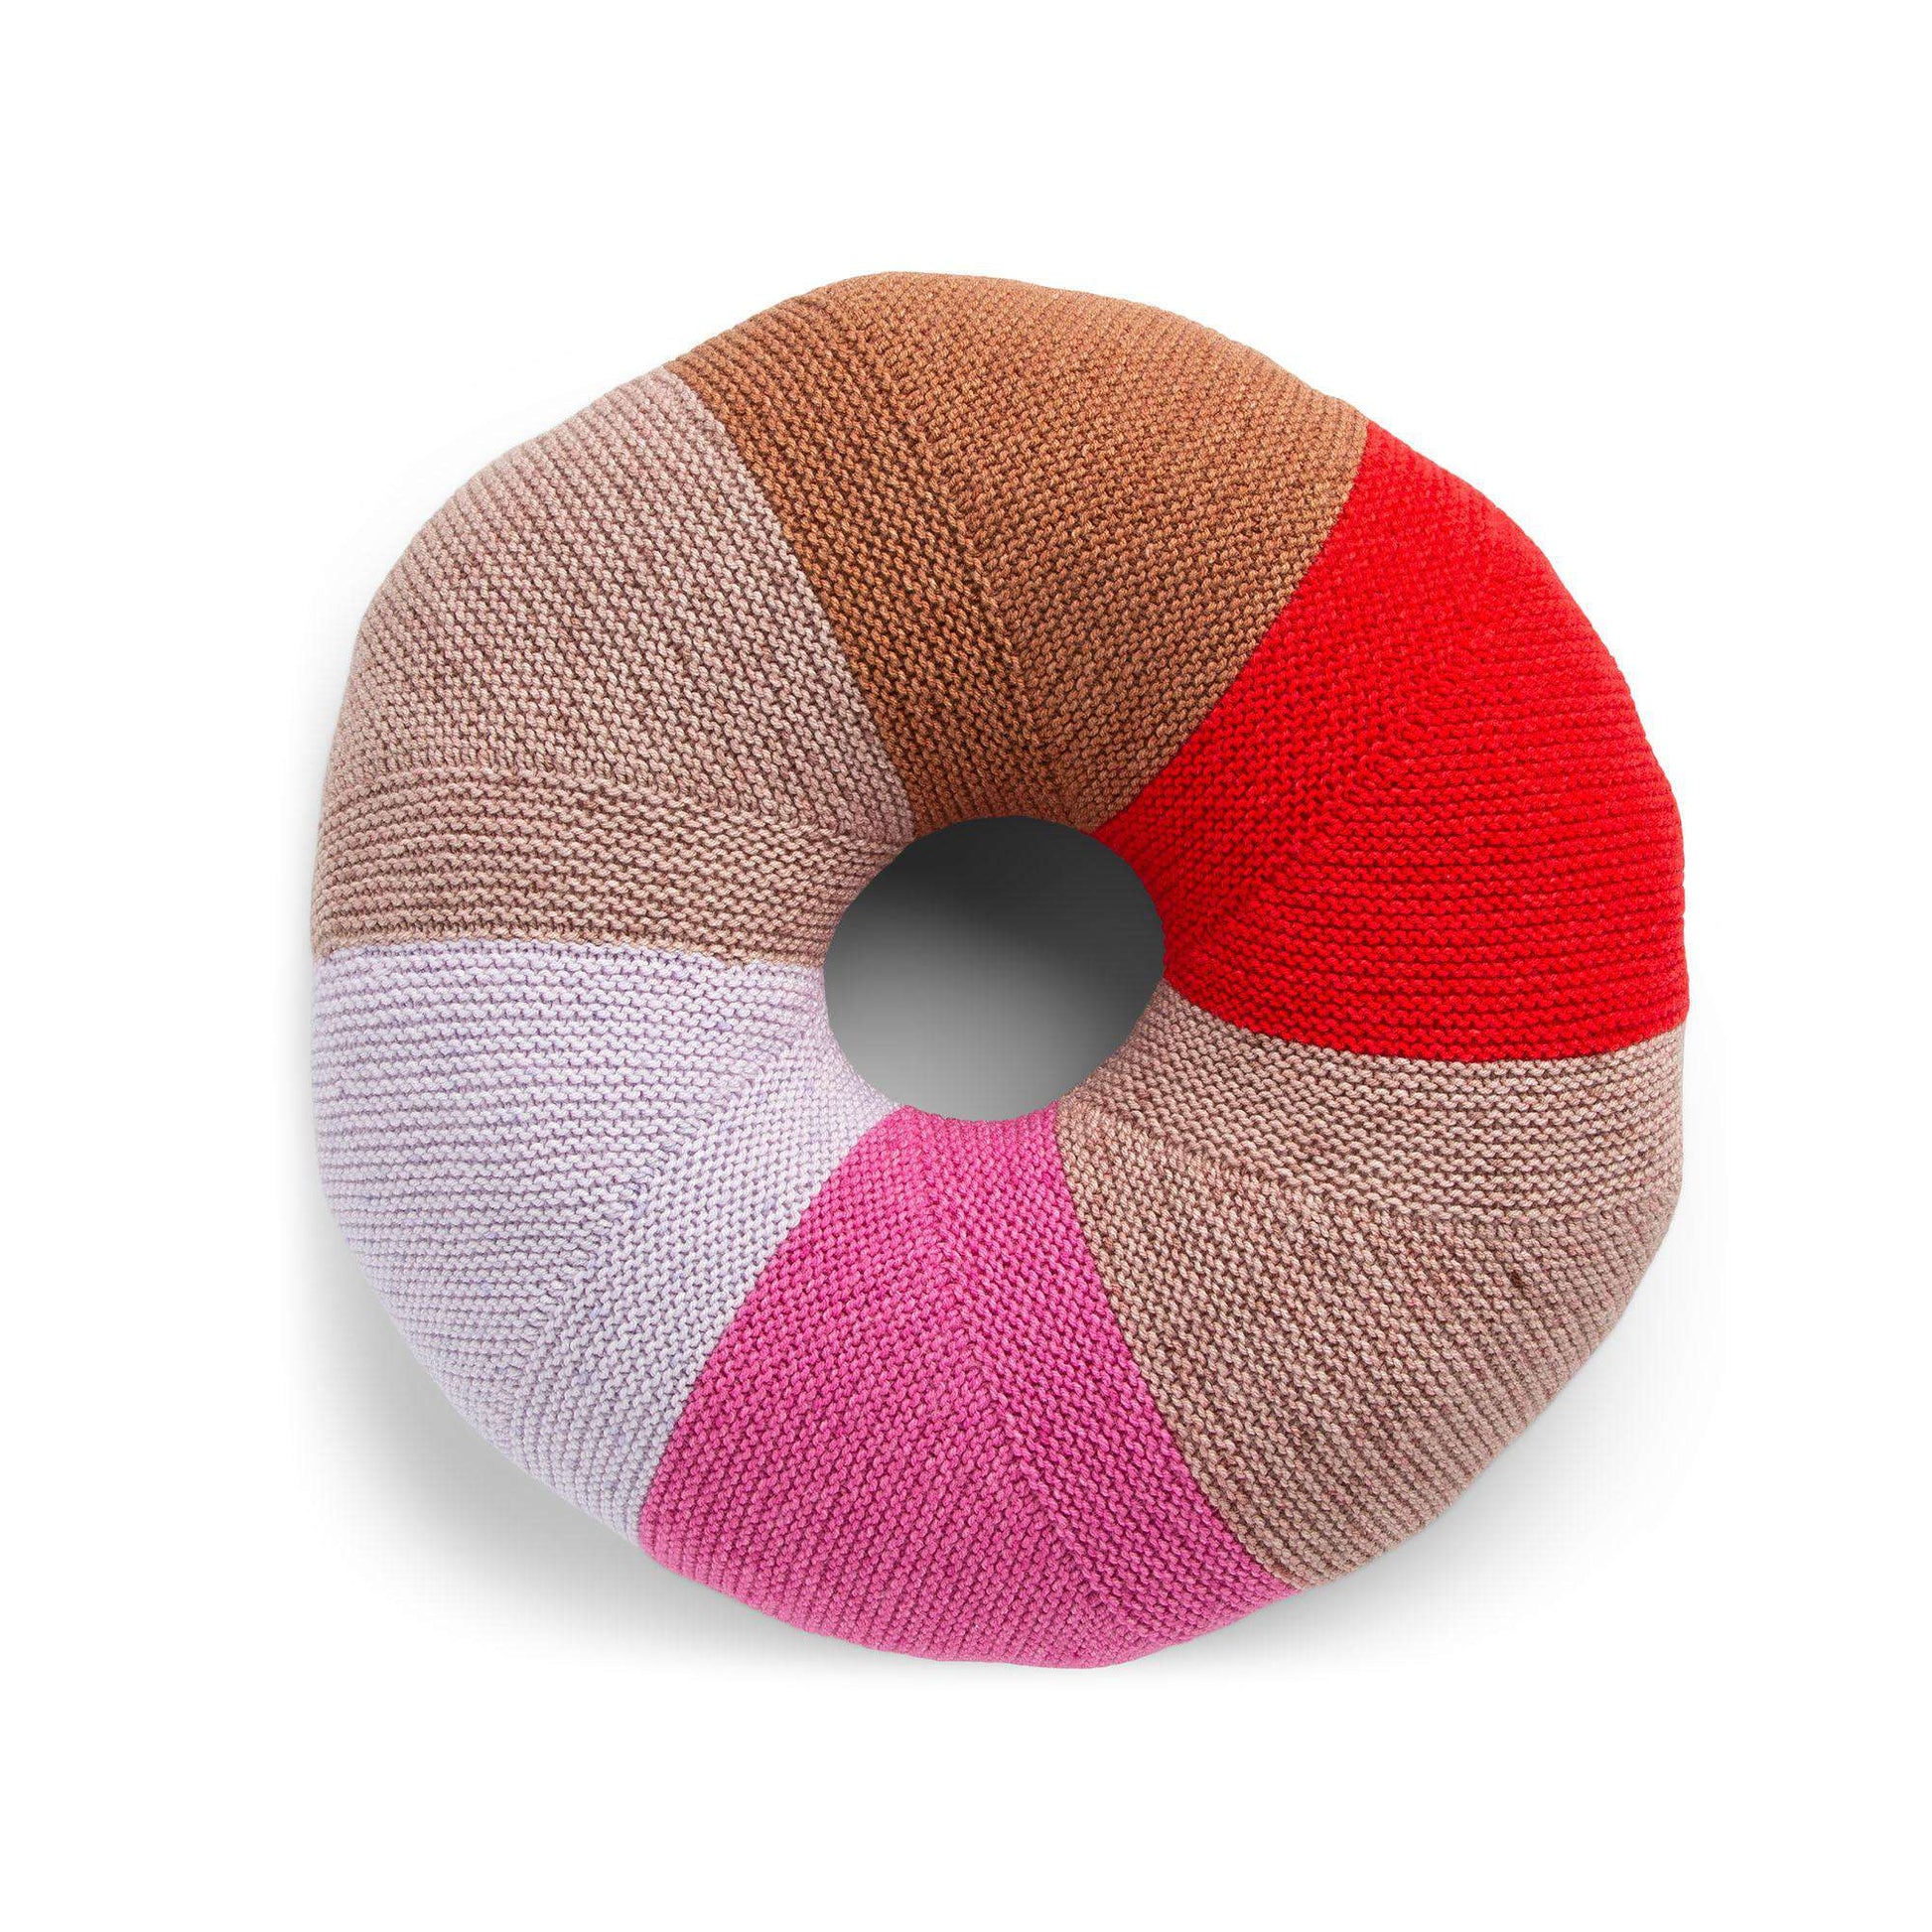 Donut Pillow Crochet Pattern: Crochet pattern